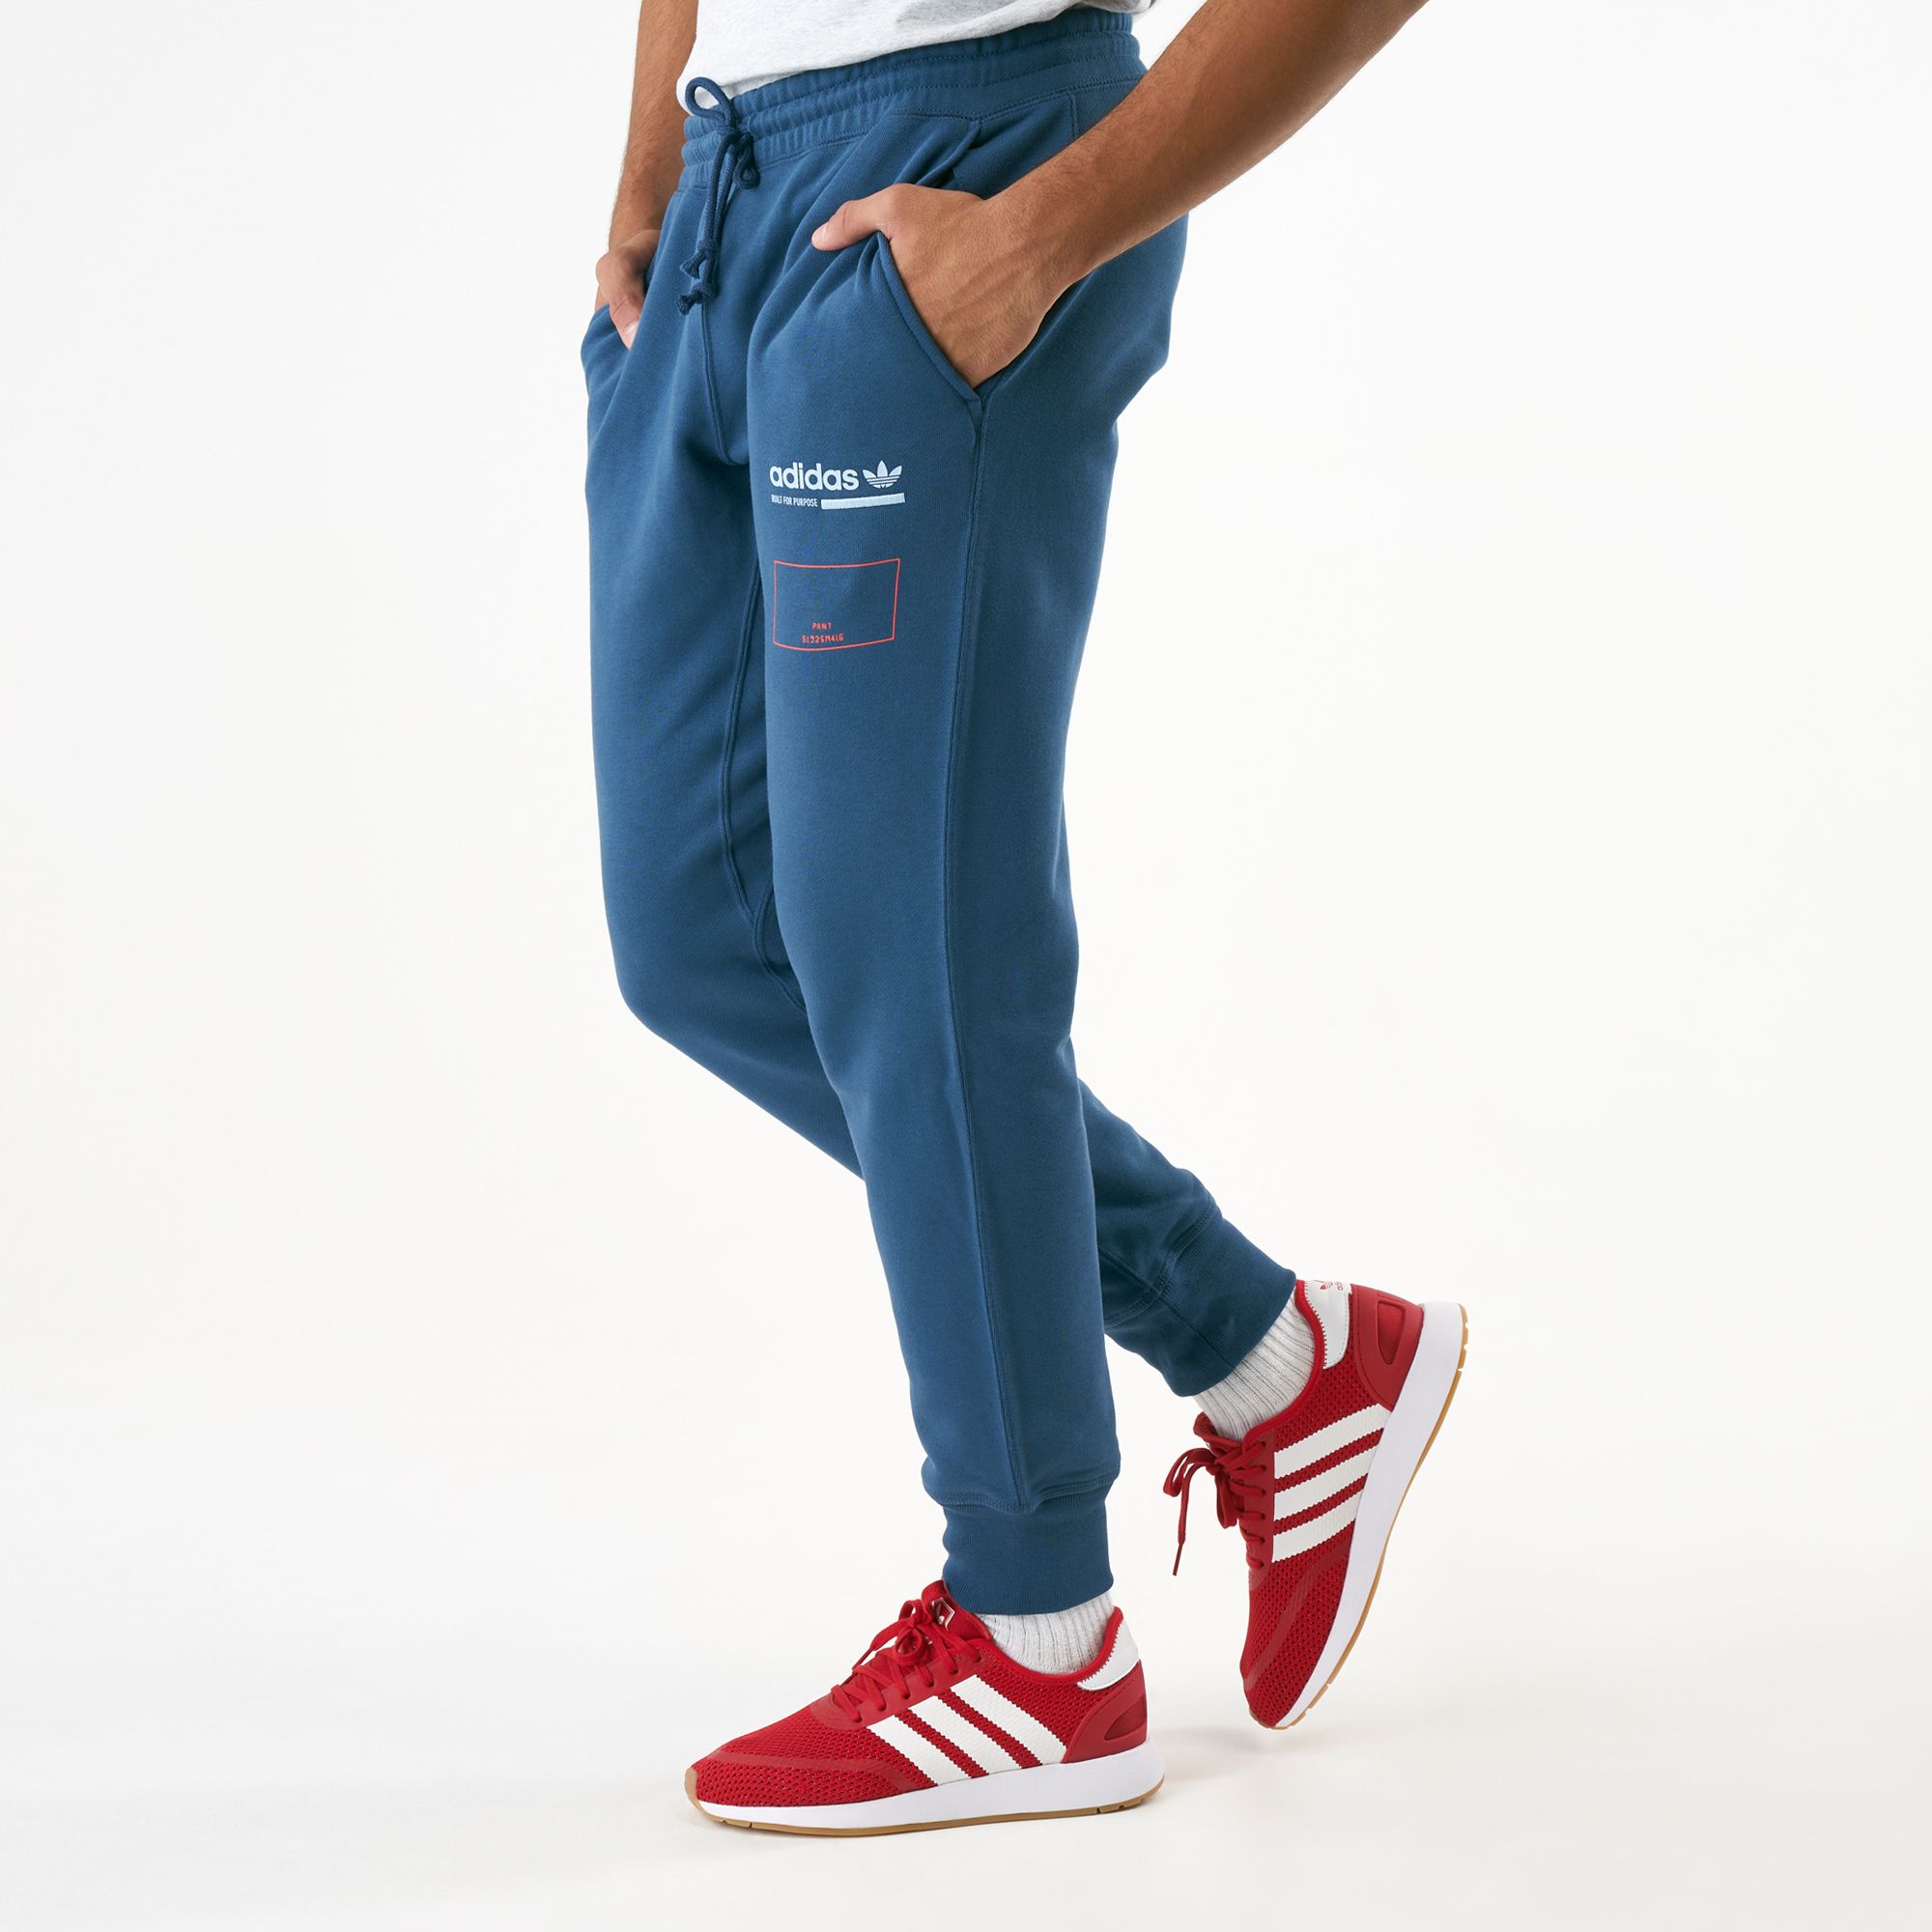 men's adidas originals kaval jogger sweatpants